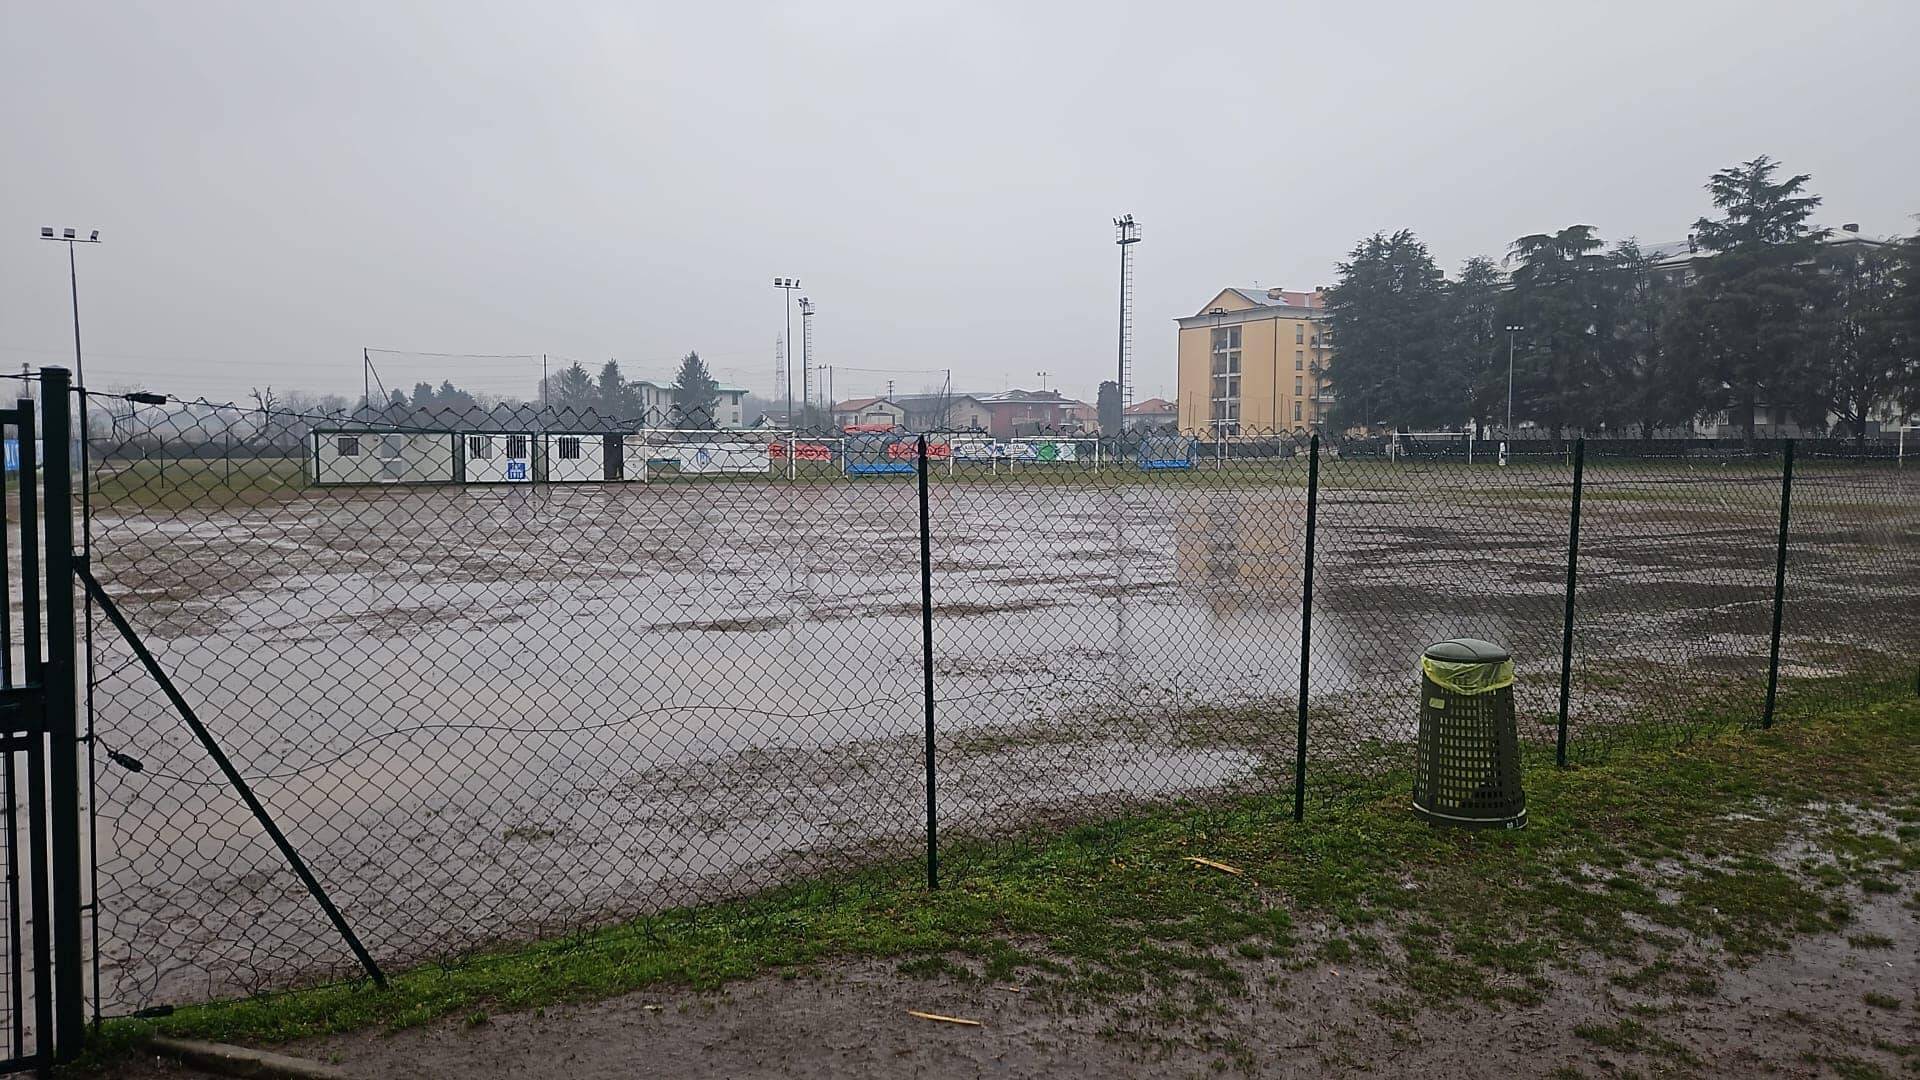 Maltempo: per i campi allagati rinviate tutte le partite di calcio al centro sportivo Matteotti di Saronno